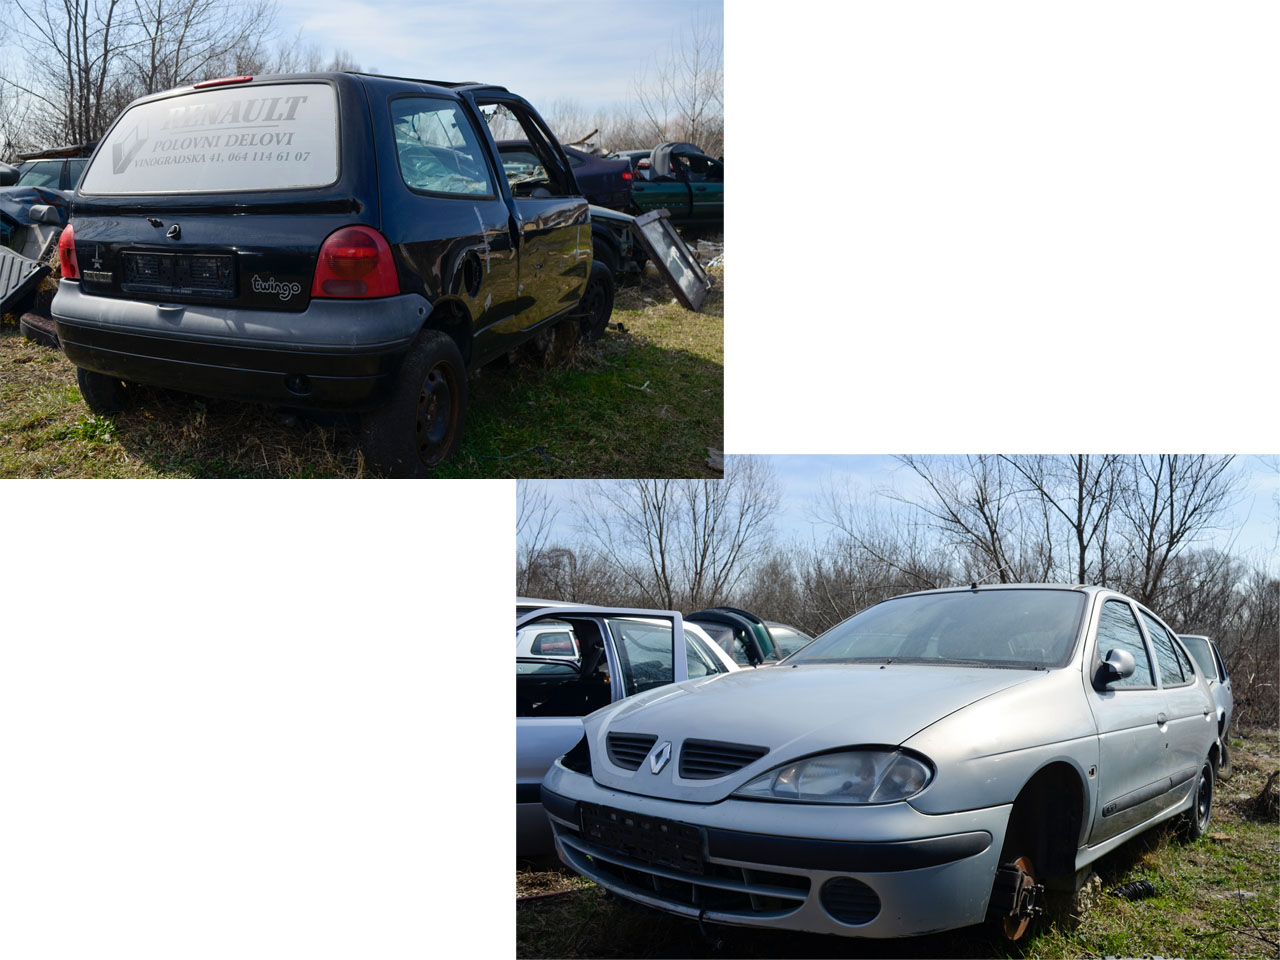 RENAULT CAR WASTE DUJA Car dumps Beograd